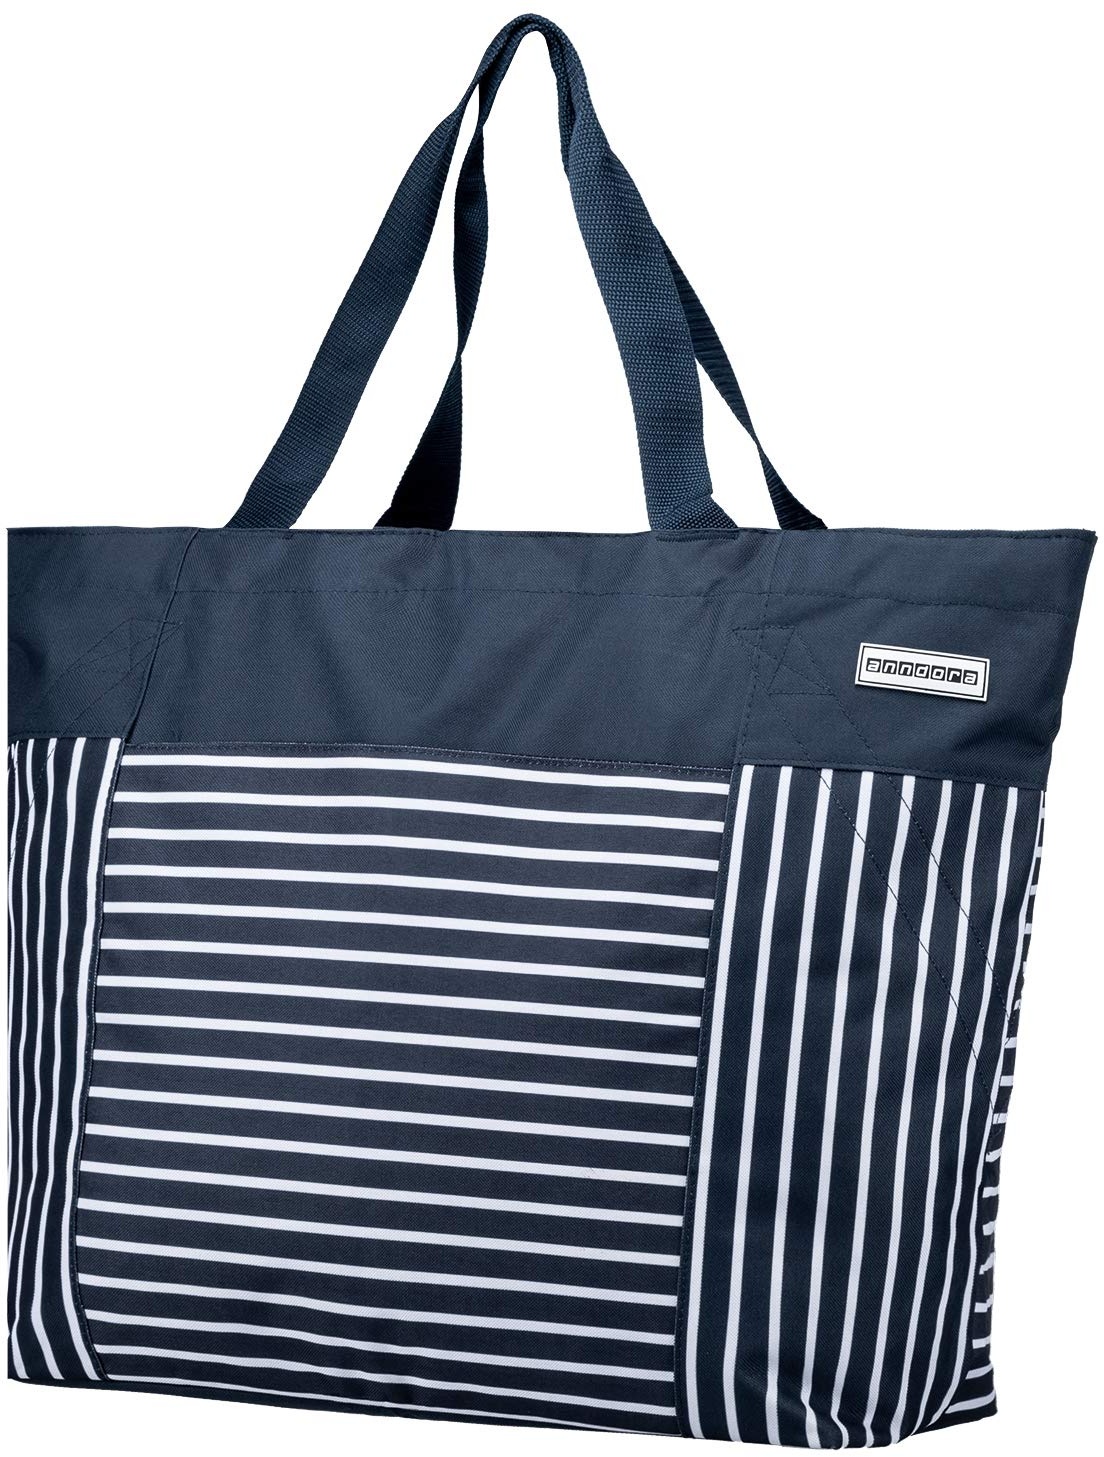 anndora XXL Shopper navy blau weiß - Strandtasche 40 Liter Schultertasche Einkaufstasche